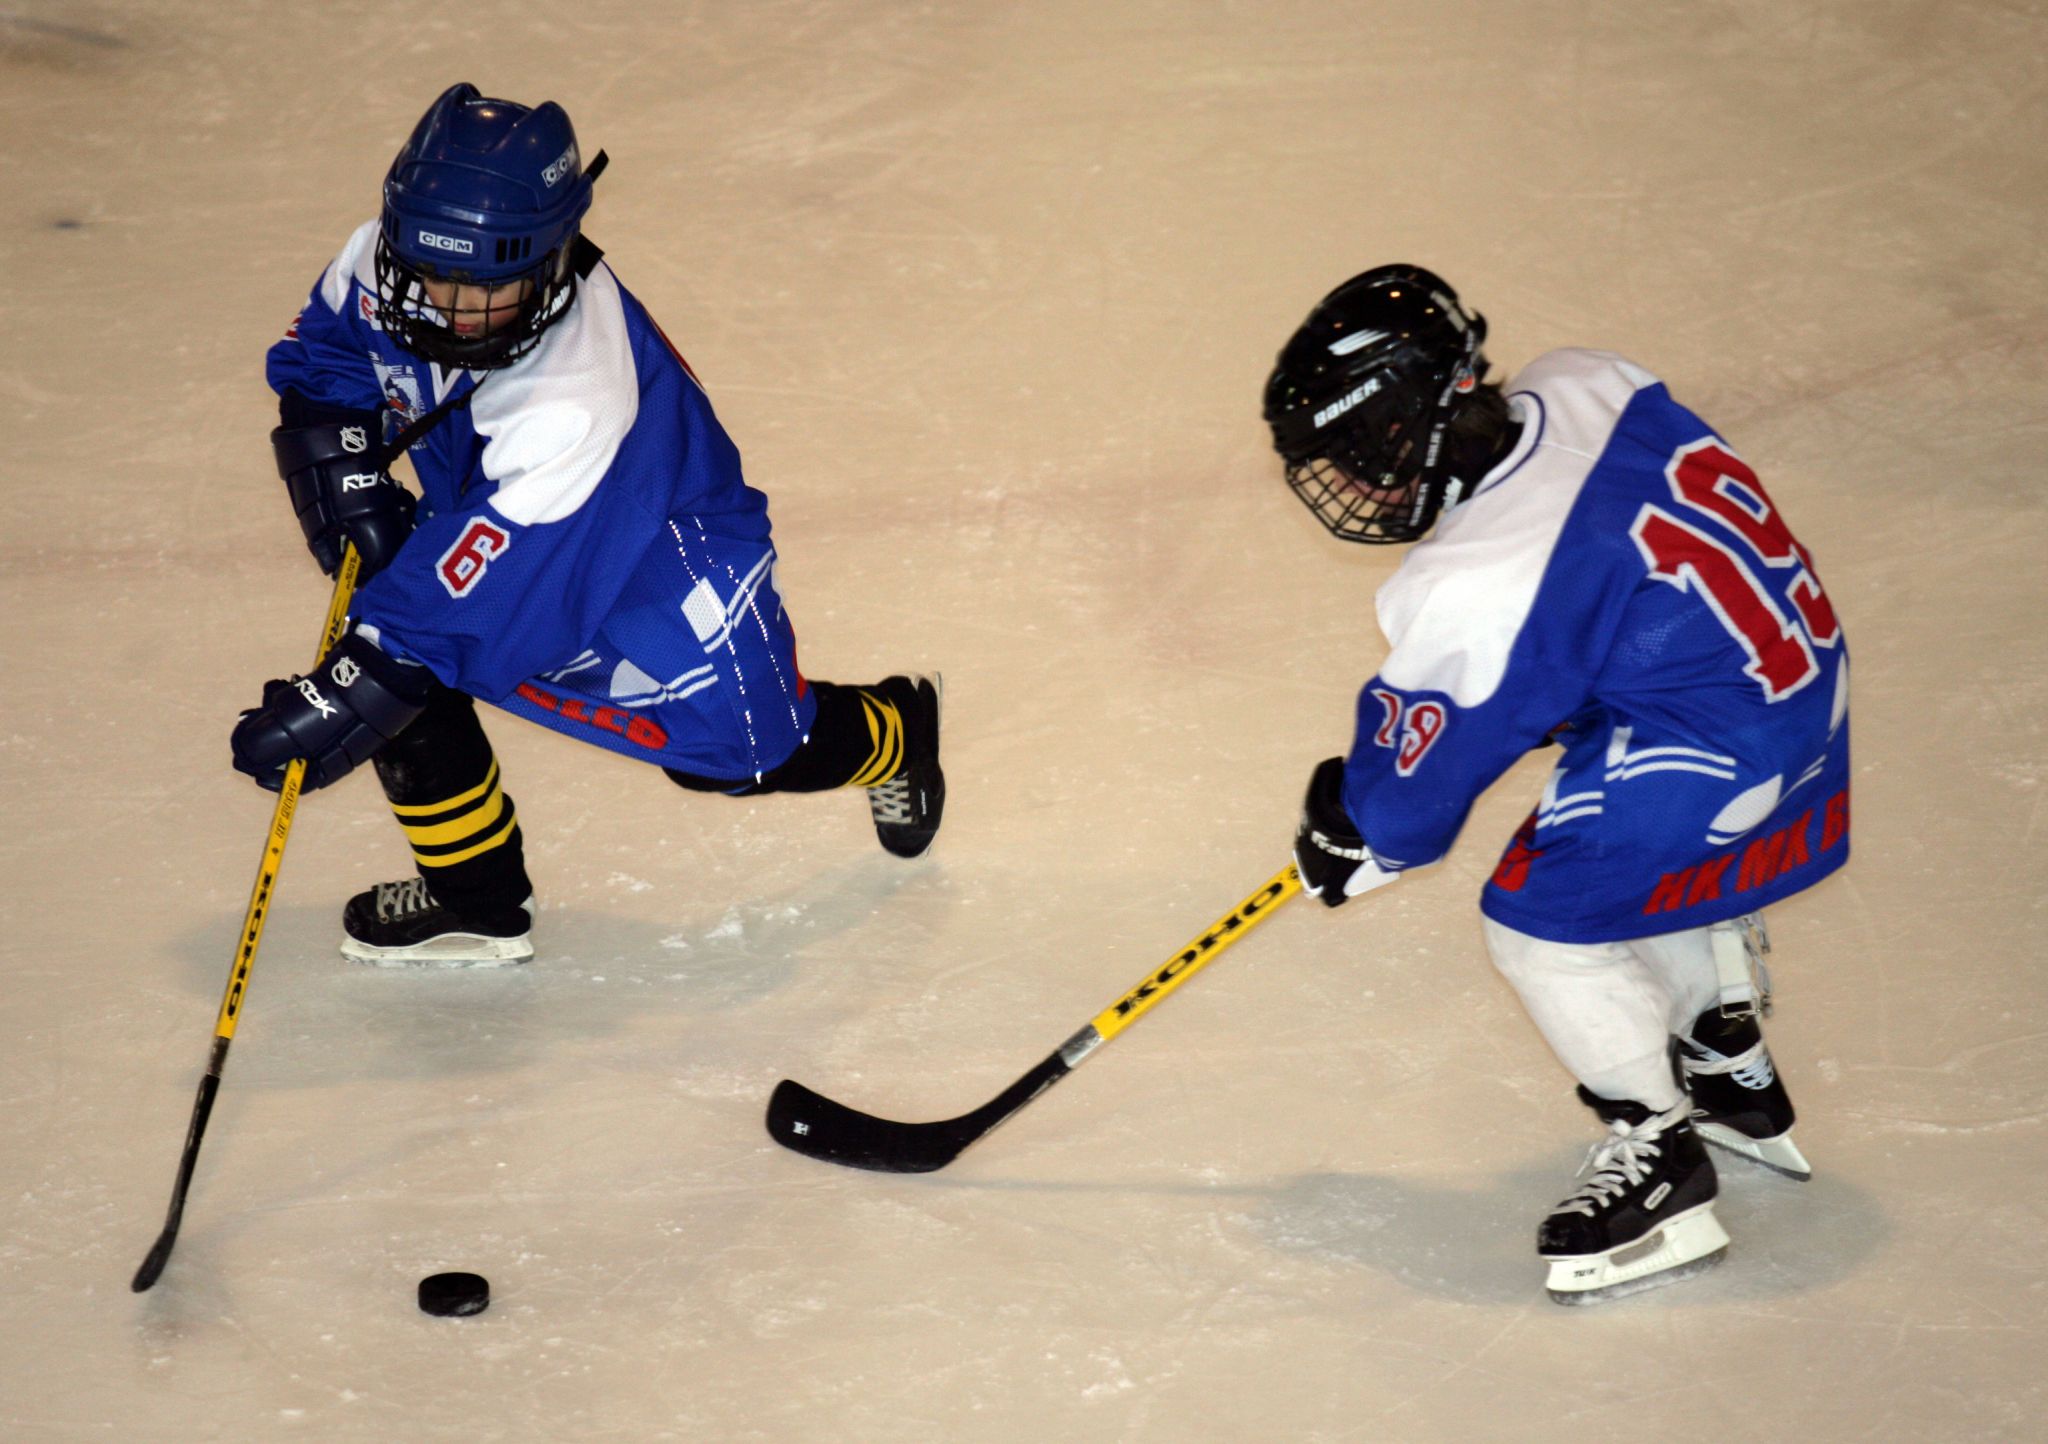 joueurs de hockey sur glace se passant le palet